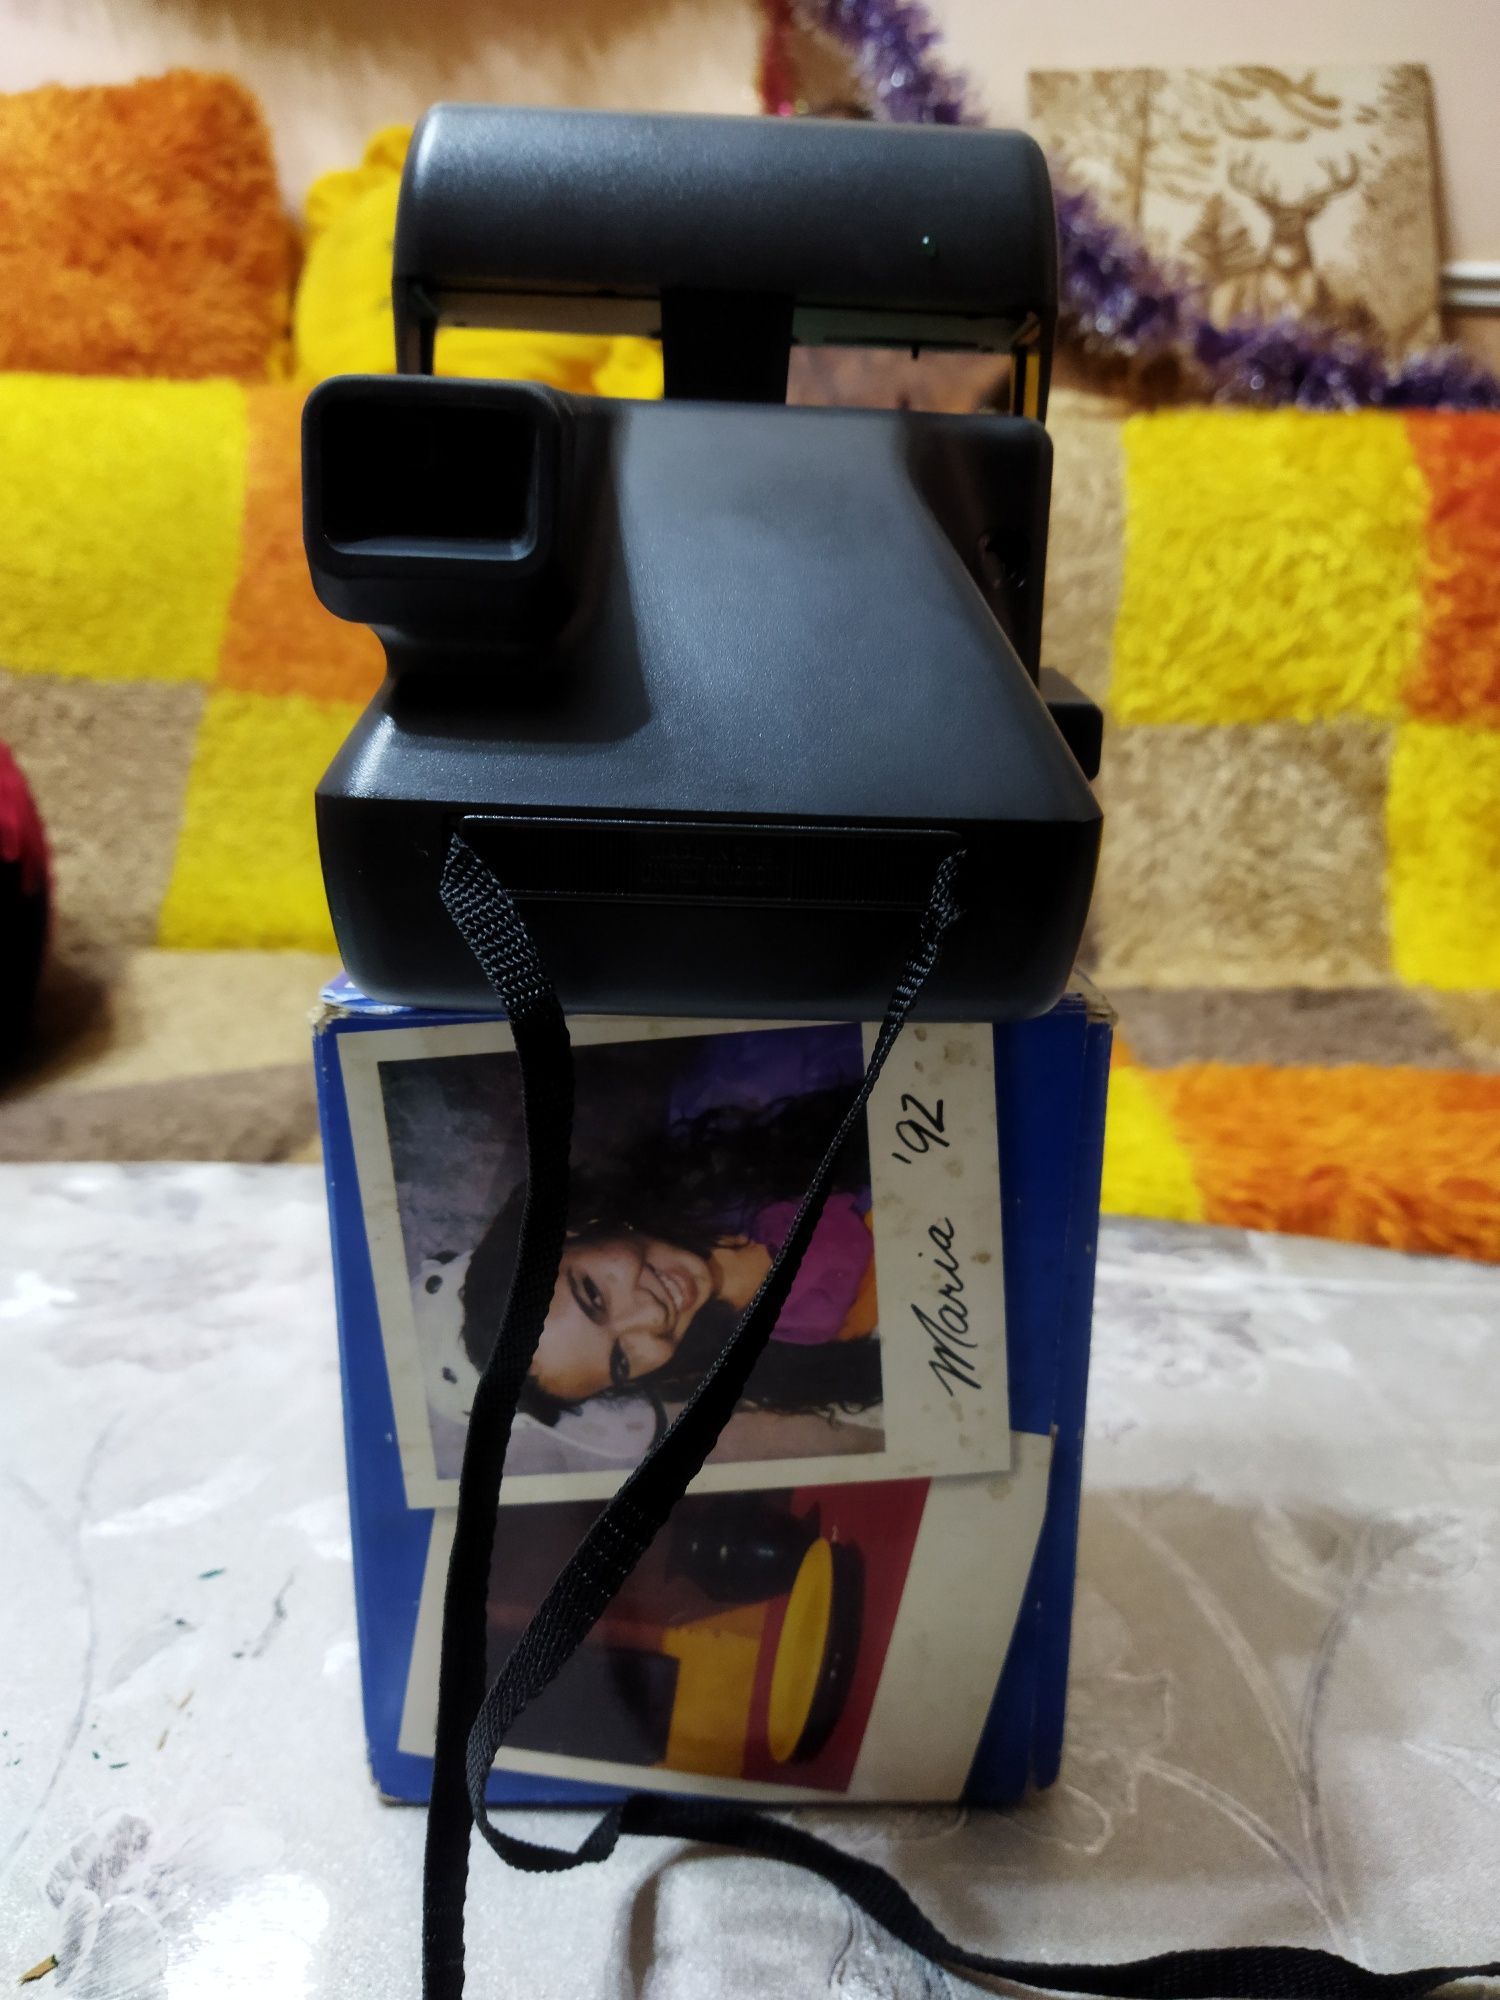 Продаётся фото апорат Polaroid в хорошем состоянии